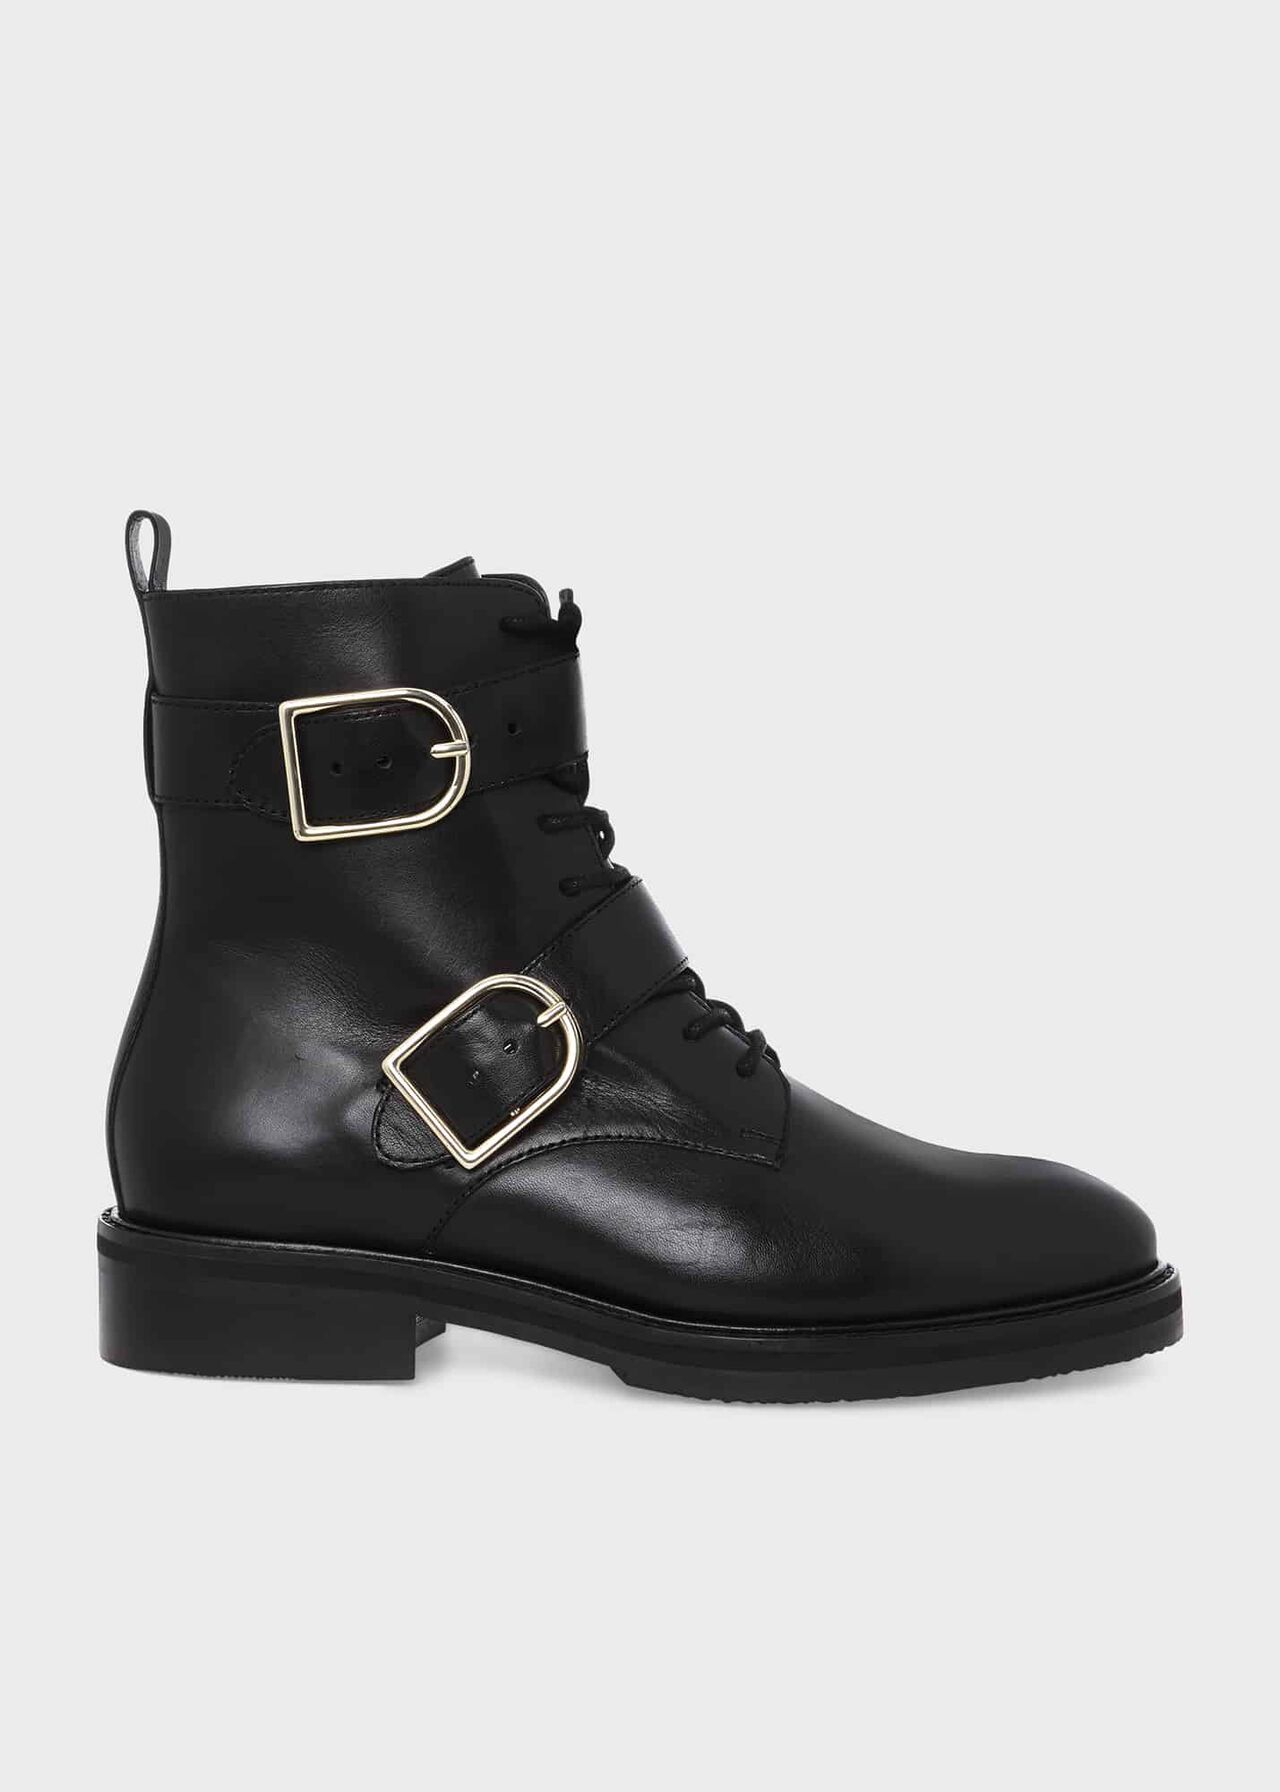 Bronwyn Boots, Black, hi-res